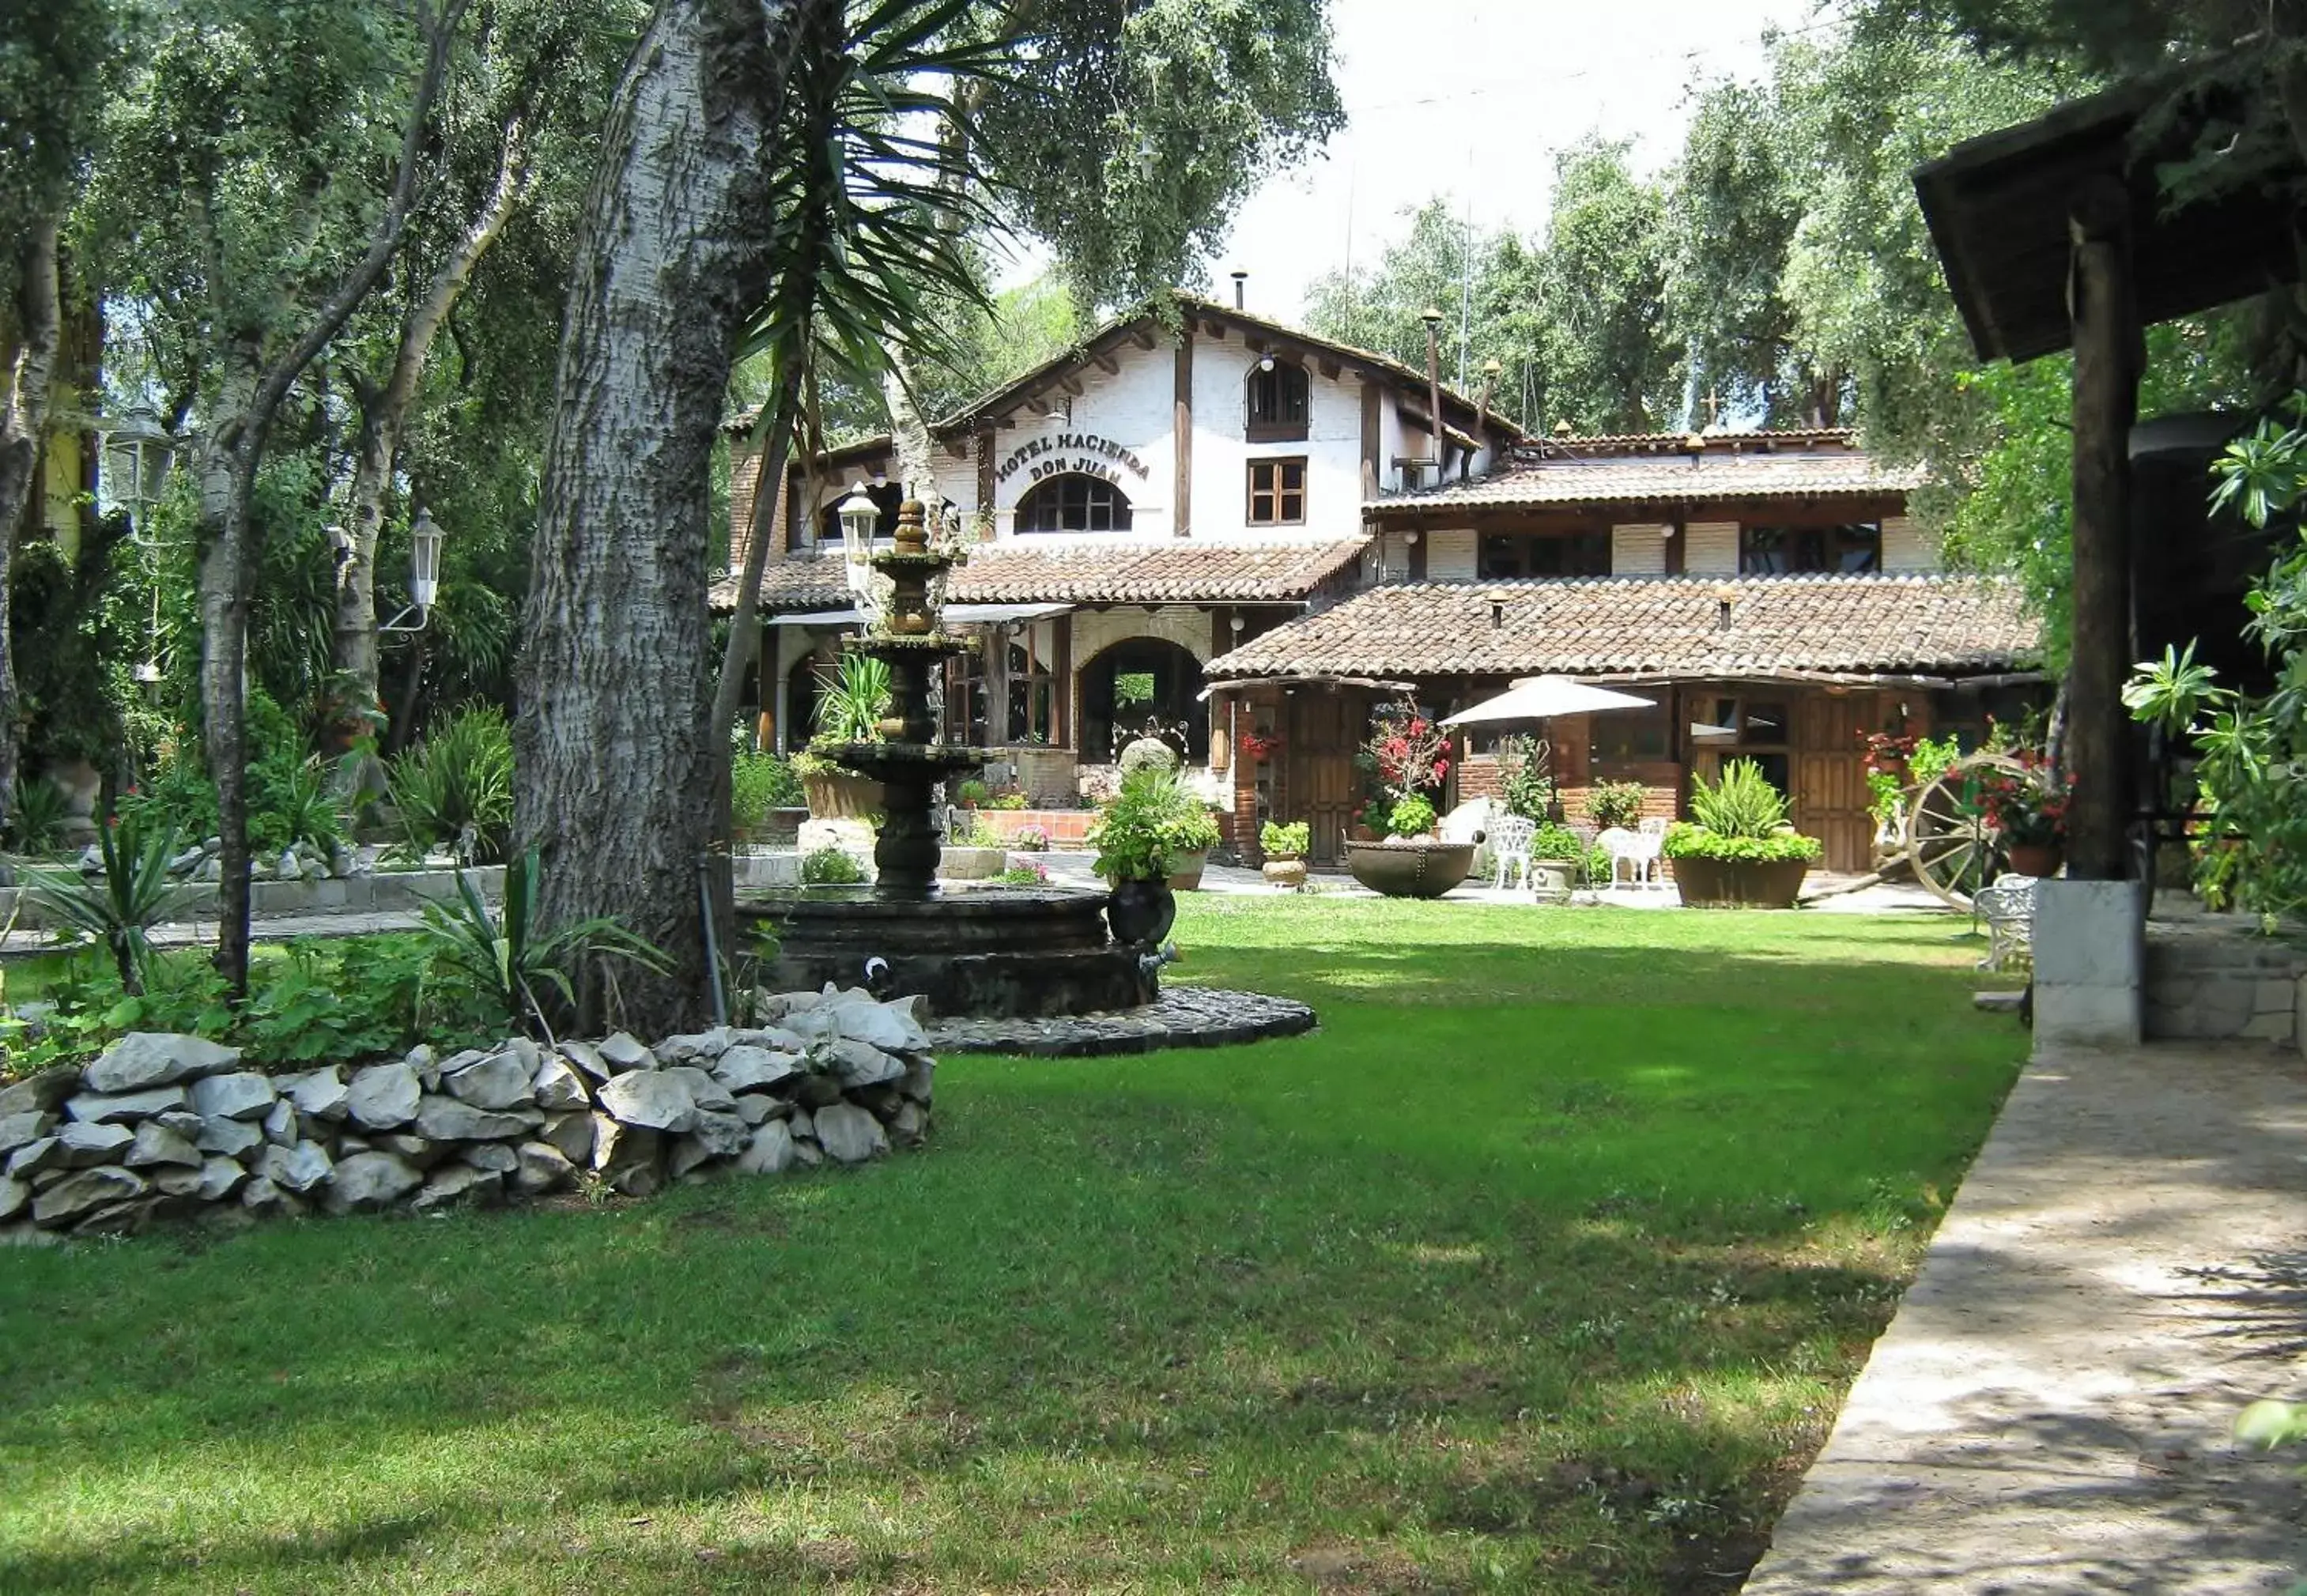 Off site, Property Building in Hotel Hacienda Don Juan San Cristobal de las Casas Chiapas